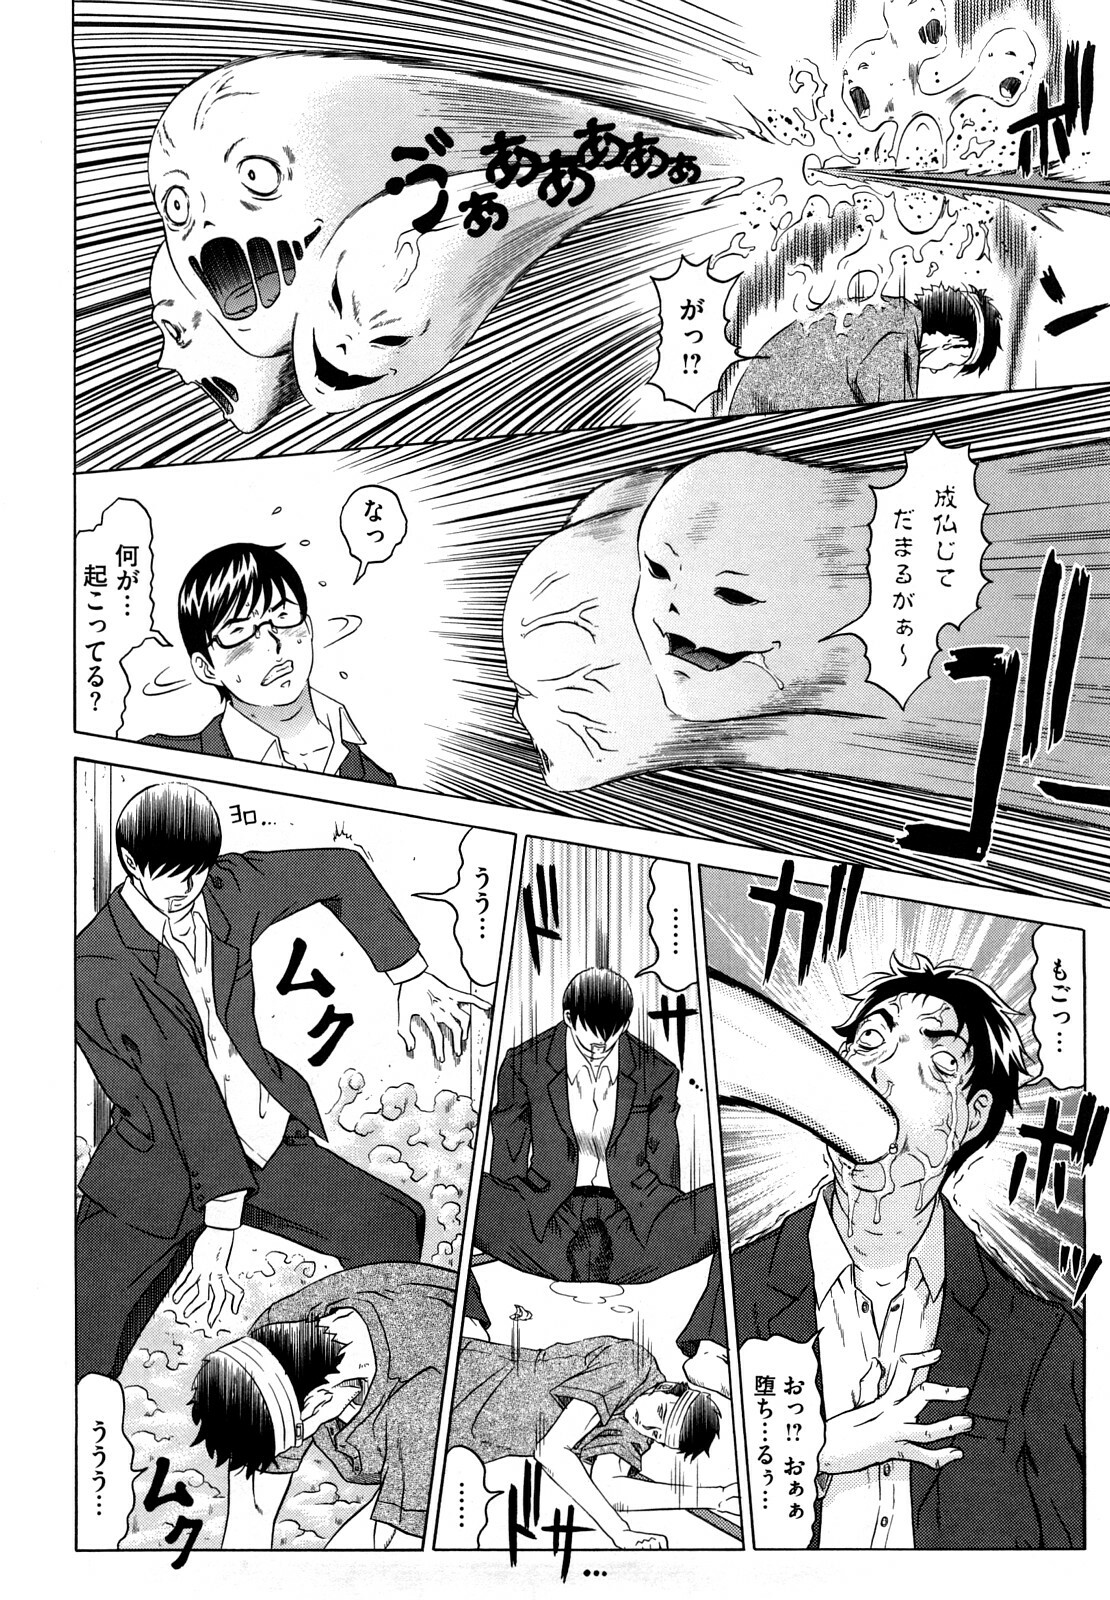 [Kurono Masakado] Nocturnal page 13 full